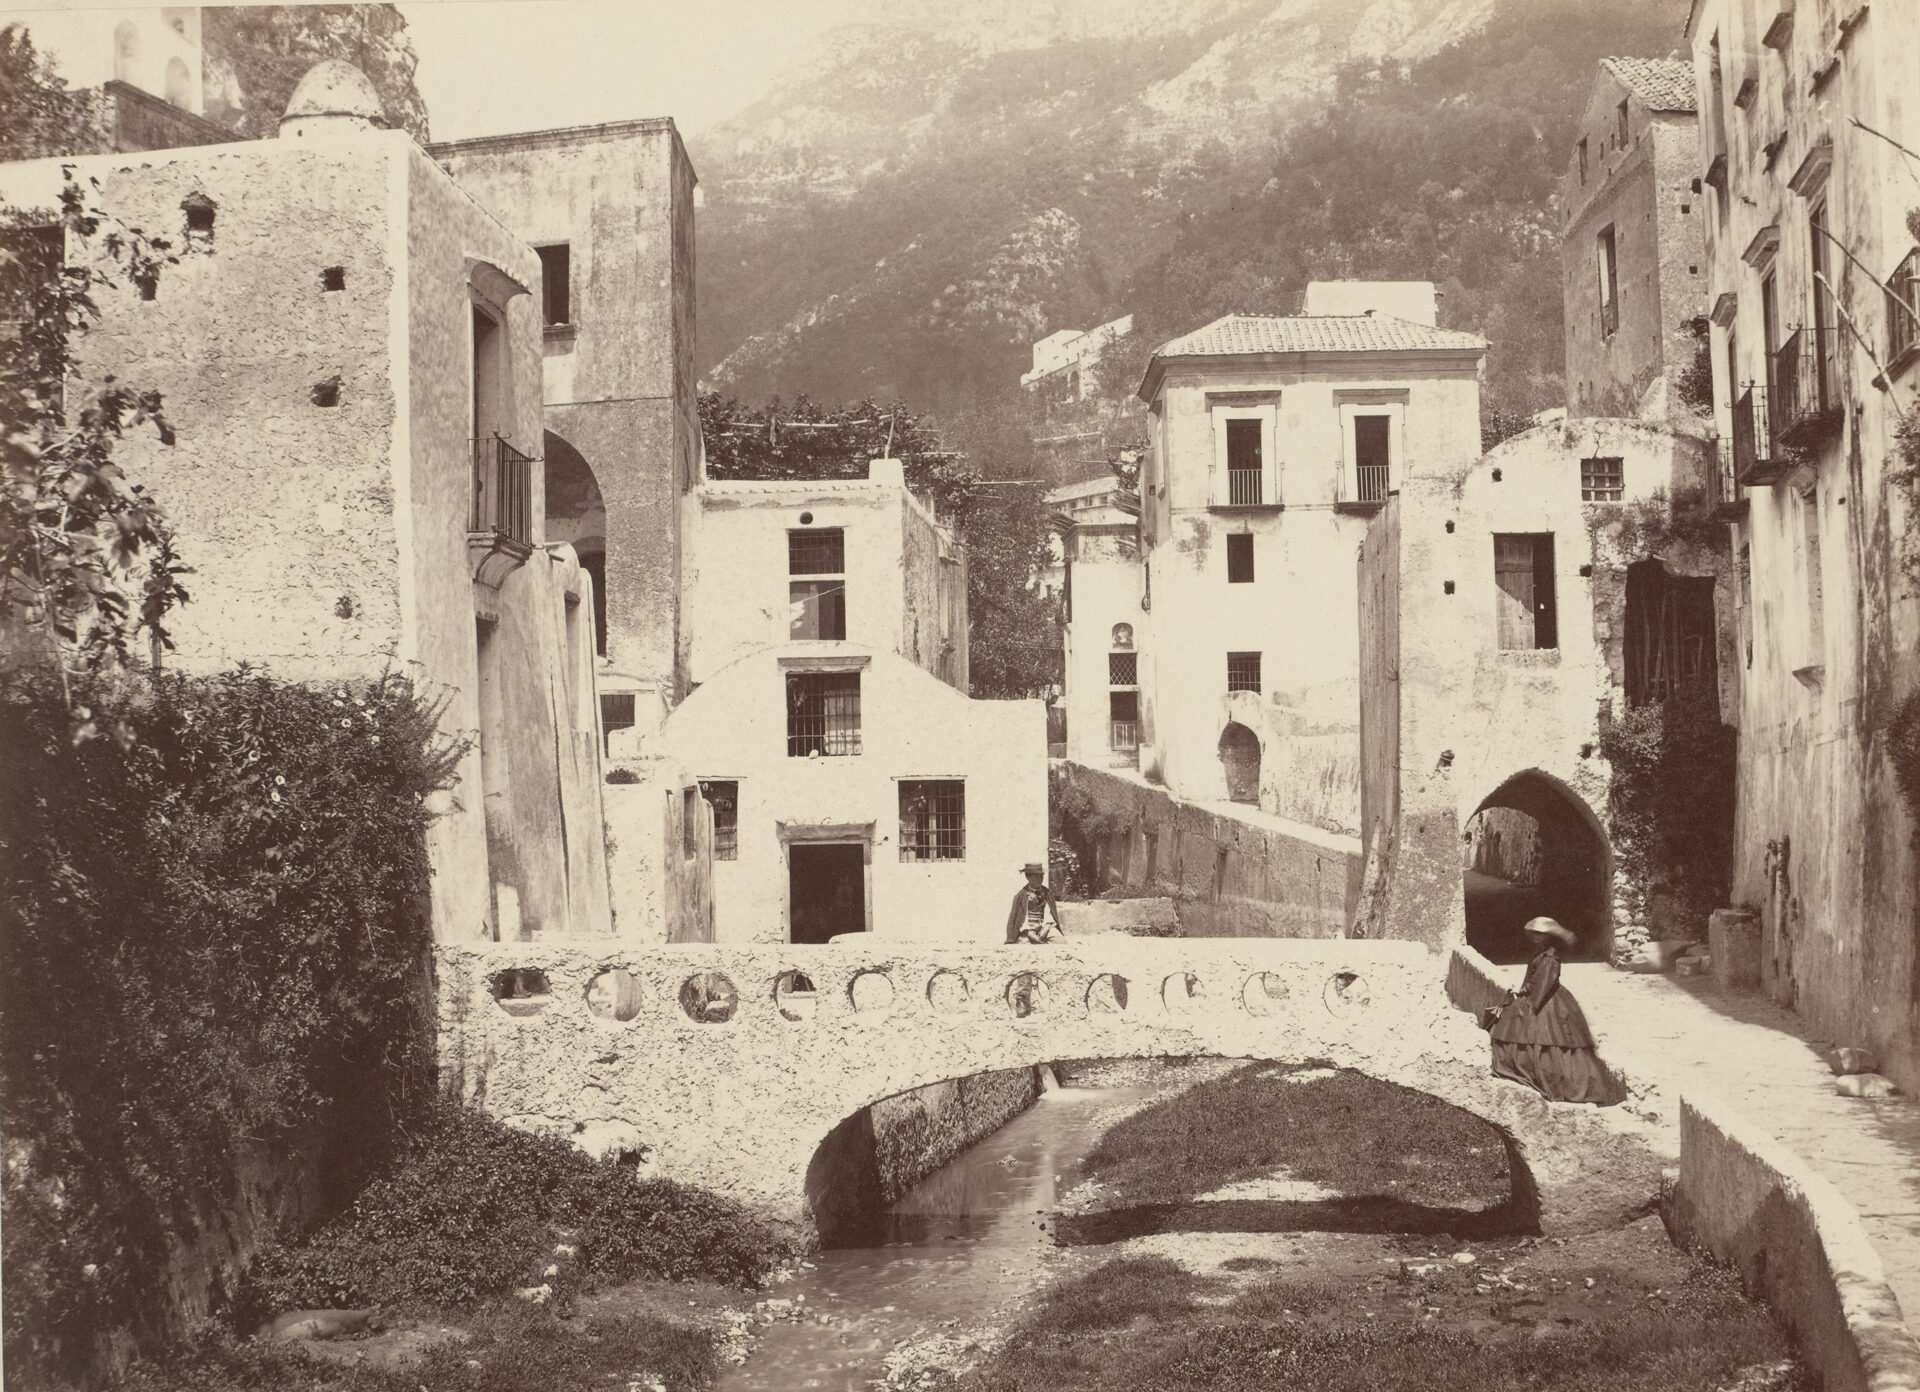 Giorgio Sommer, Amalfi, Valle dei Mulini, um 1860–1870, Albuminpapier auf Karton, Städel Museum, Frankfurt am Main, Public Domain